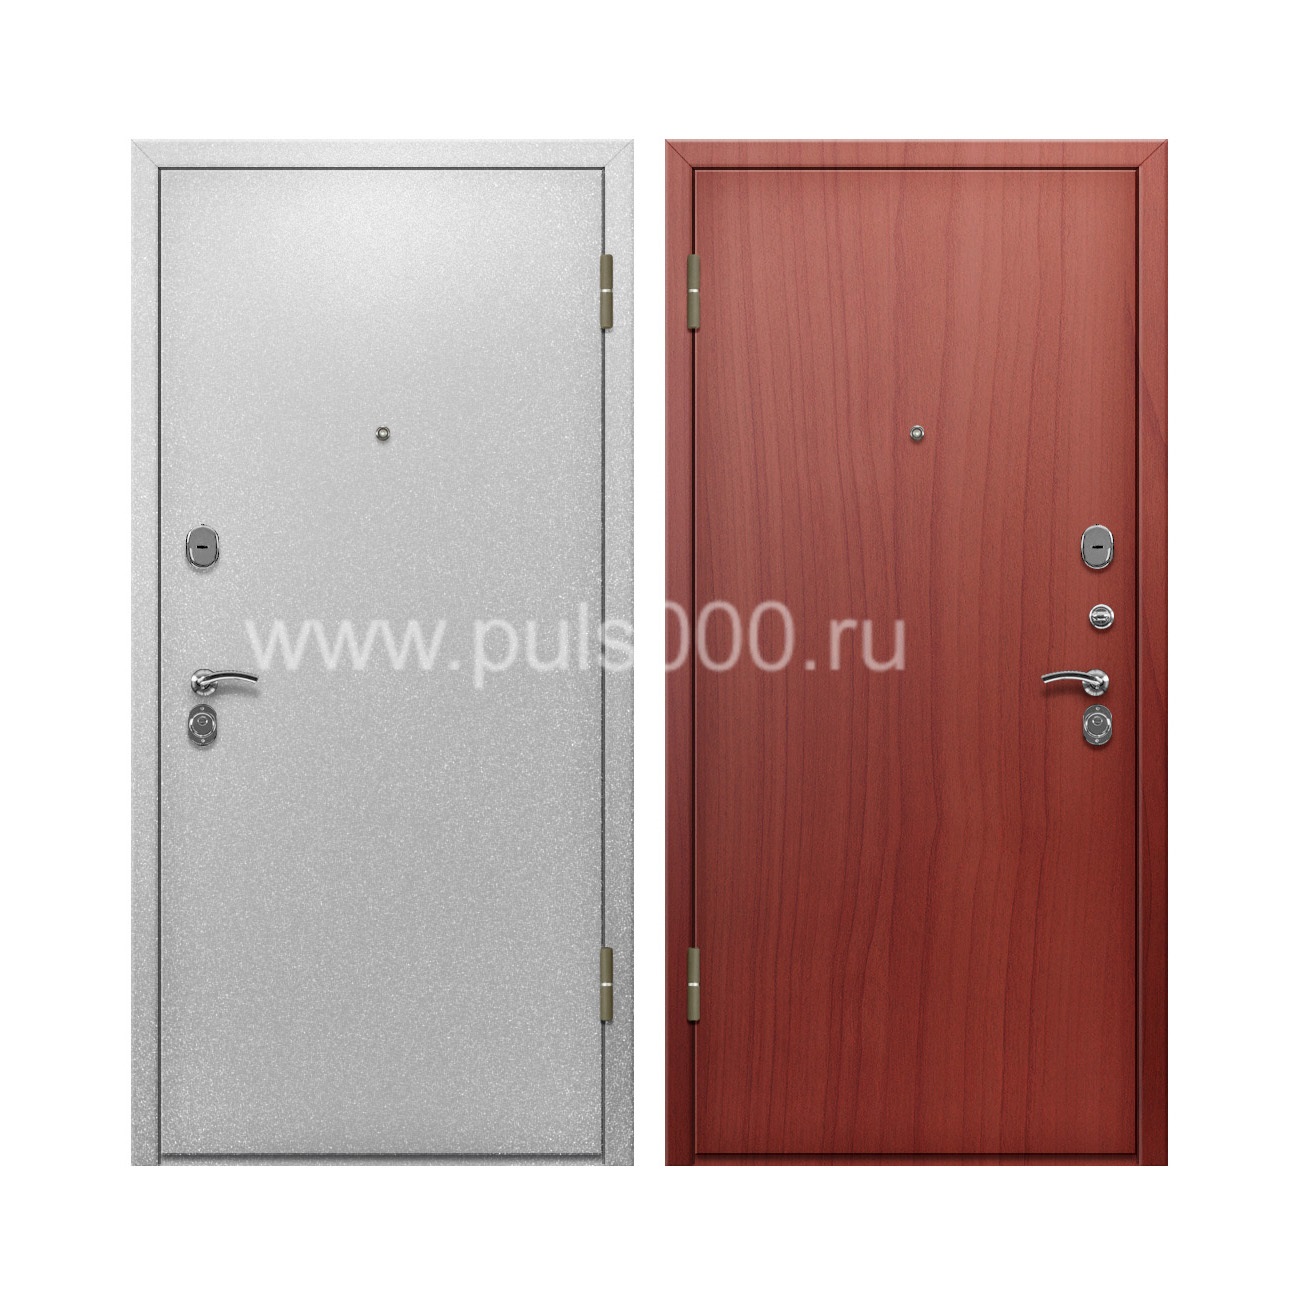 Порошковая дверь с отделкой ламинатом внутри PR-57 